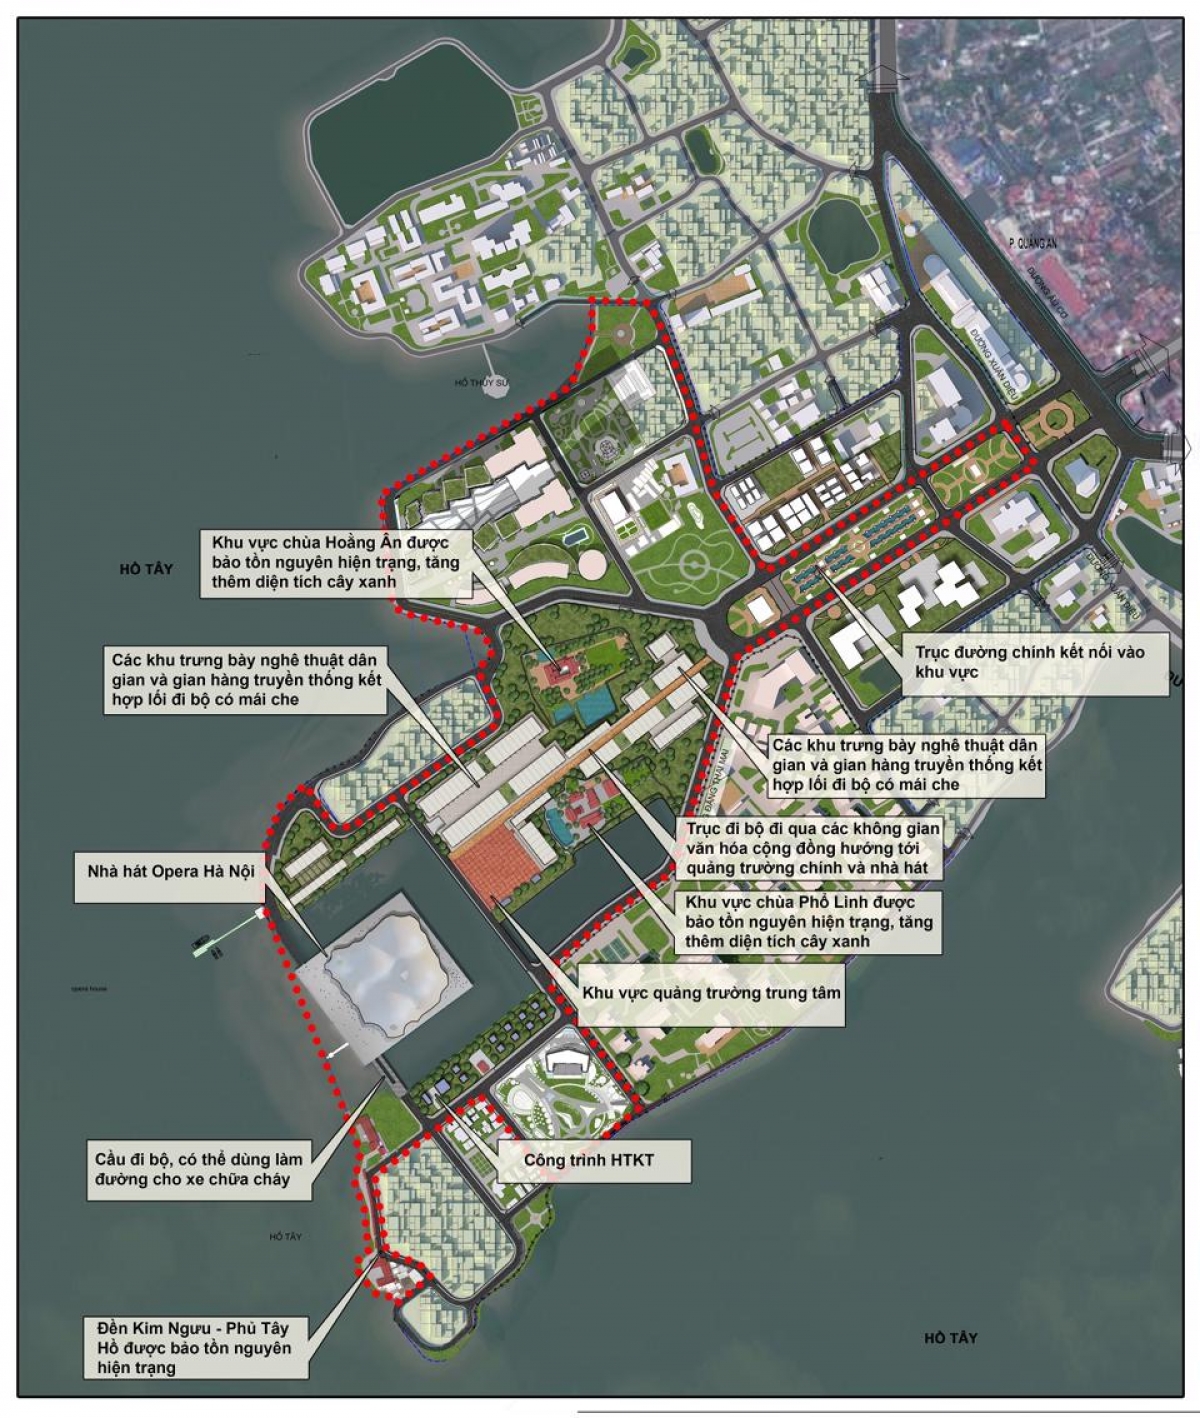 Sẽ tiếp thu ý kiến chính đáng của người dân về quy hoạch bán đảo Quảng An - Ảnh 2.